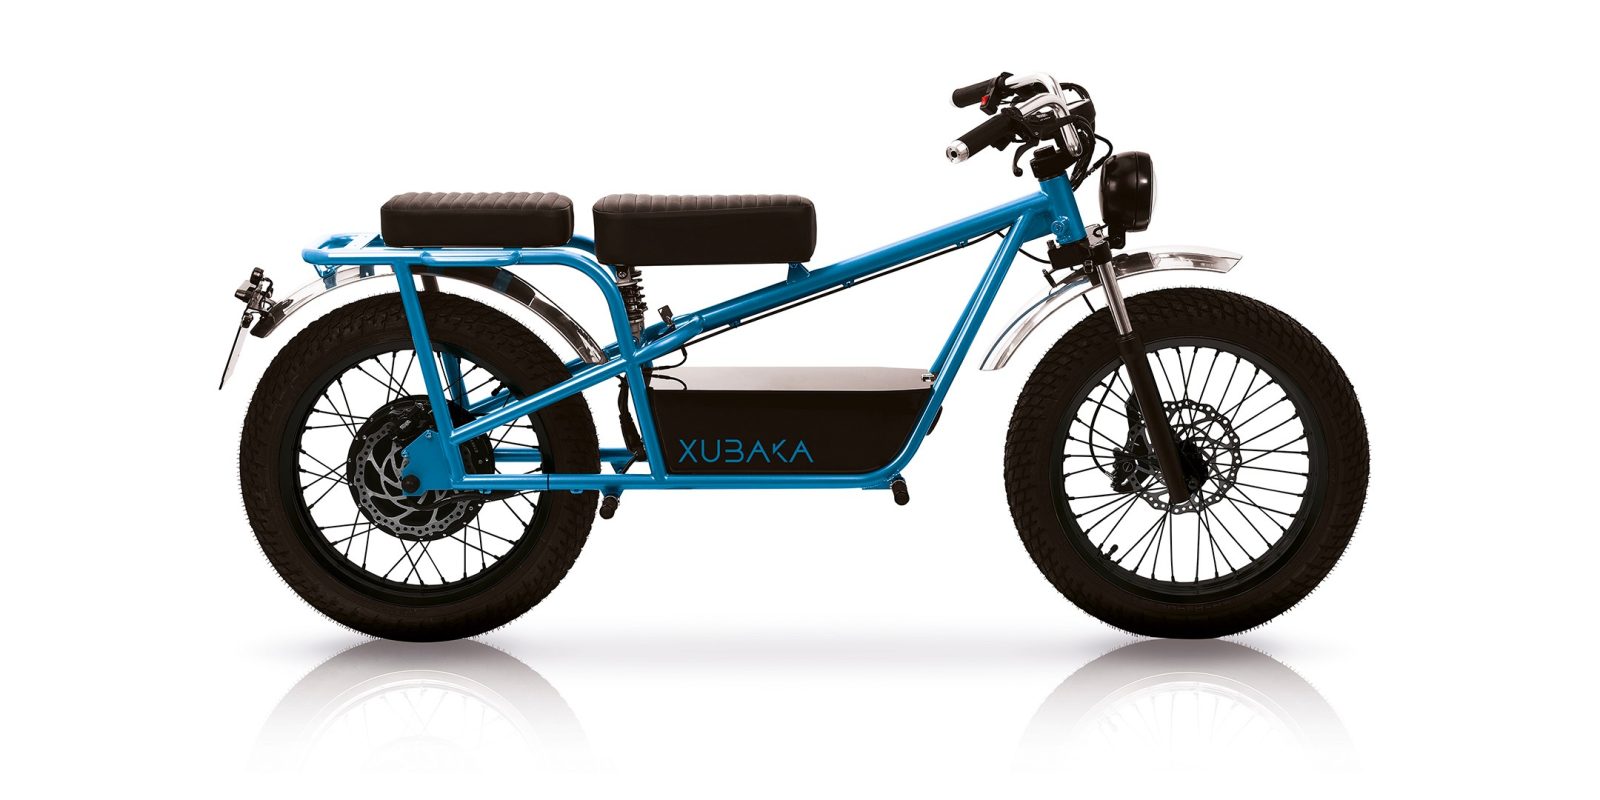 xubaka electric motorcycle